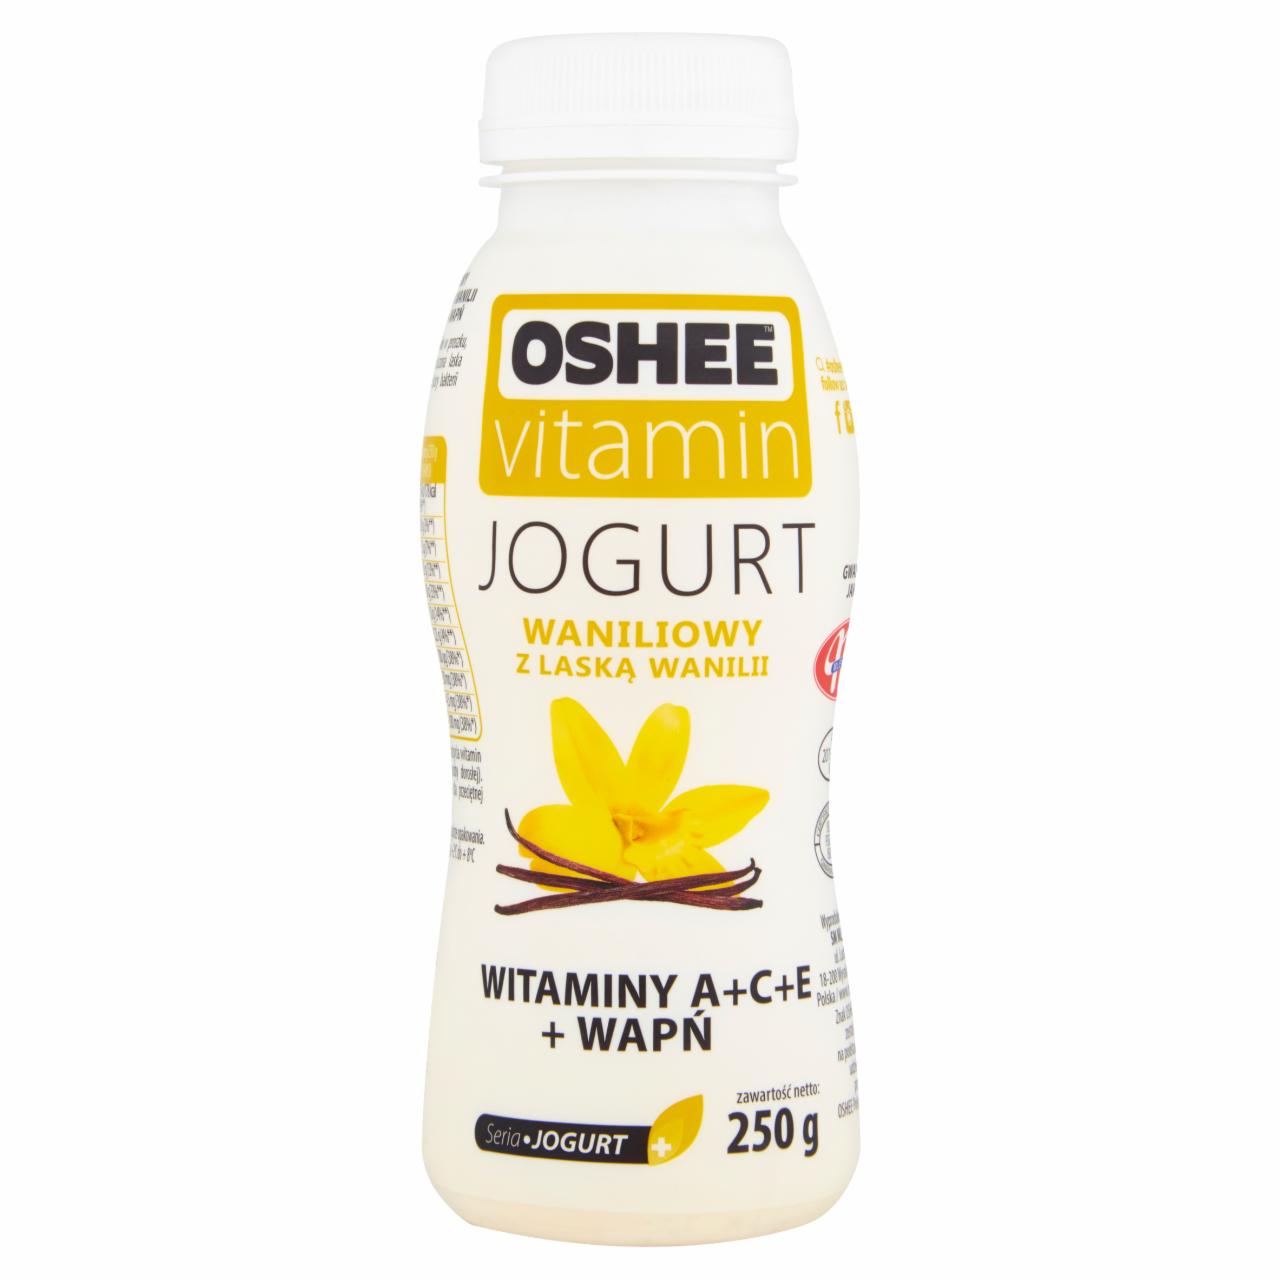 Zdjęcia - Oshee Vitamin Jogurt waniliowy z laską wanilii 250 g